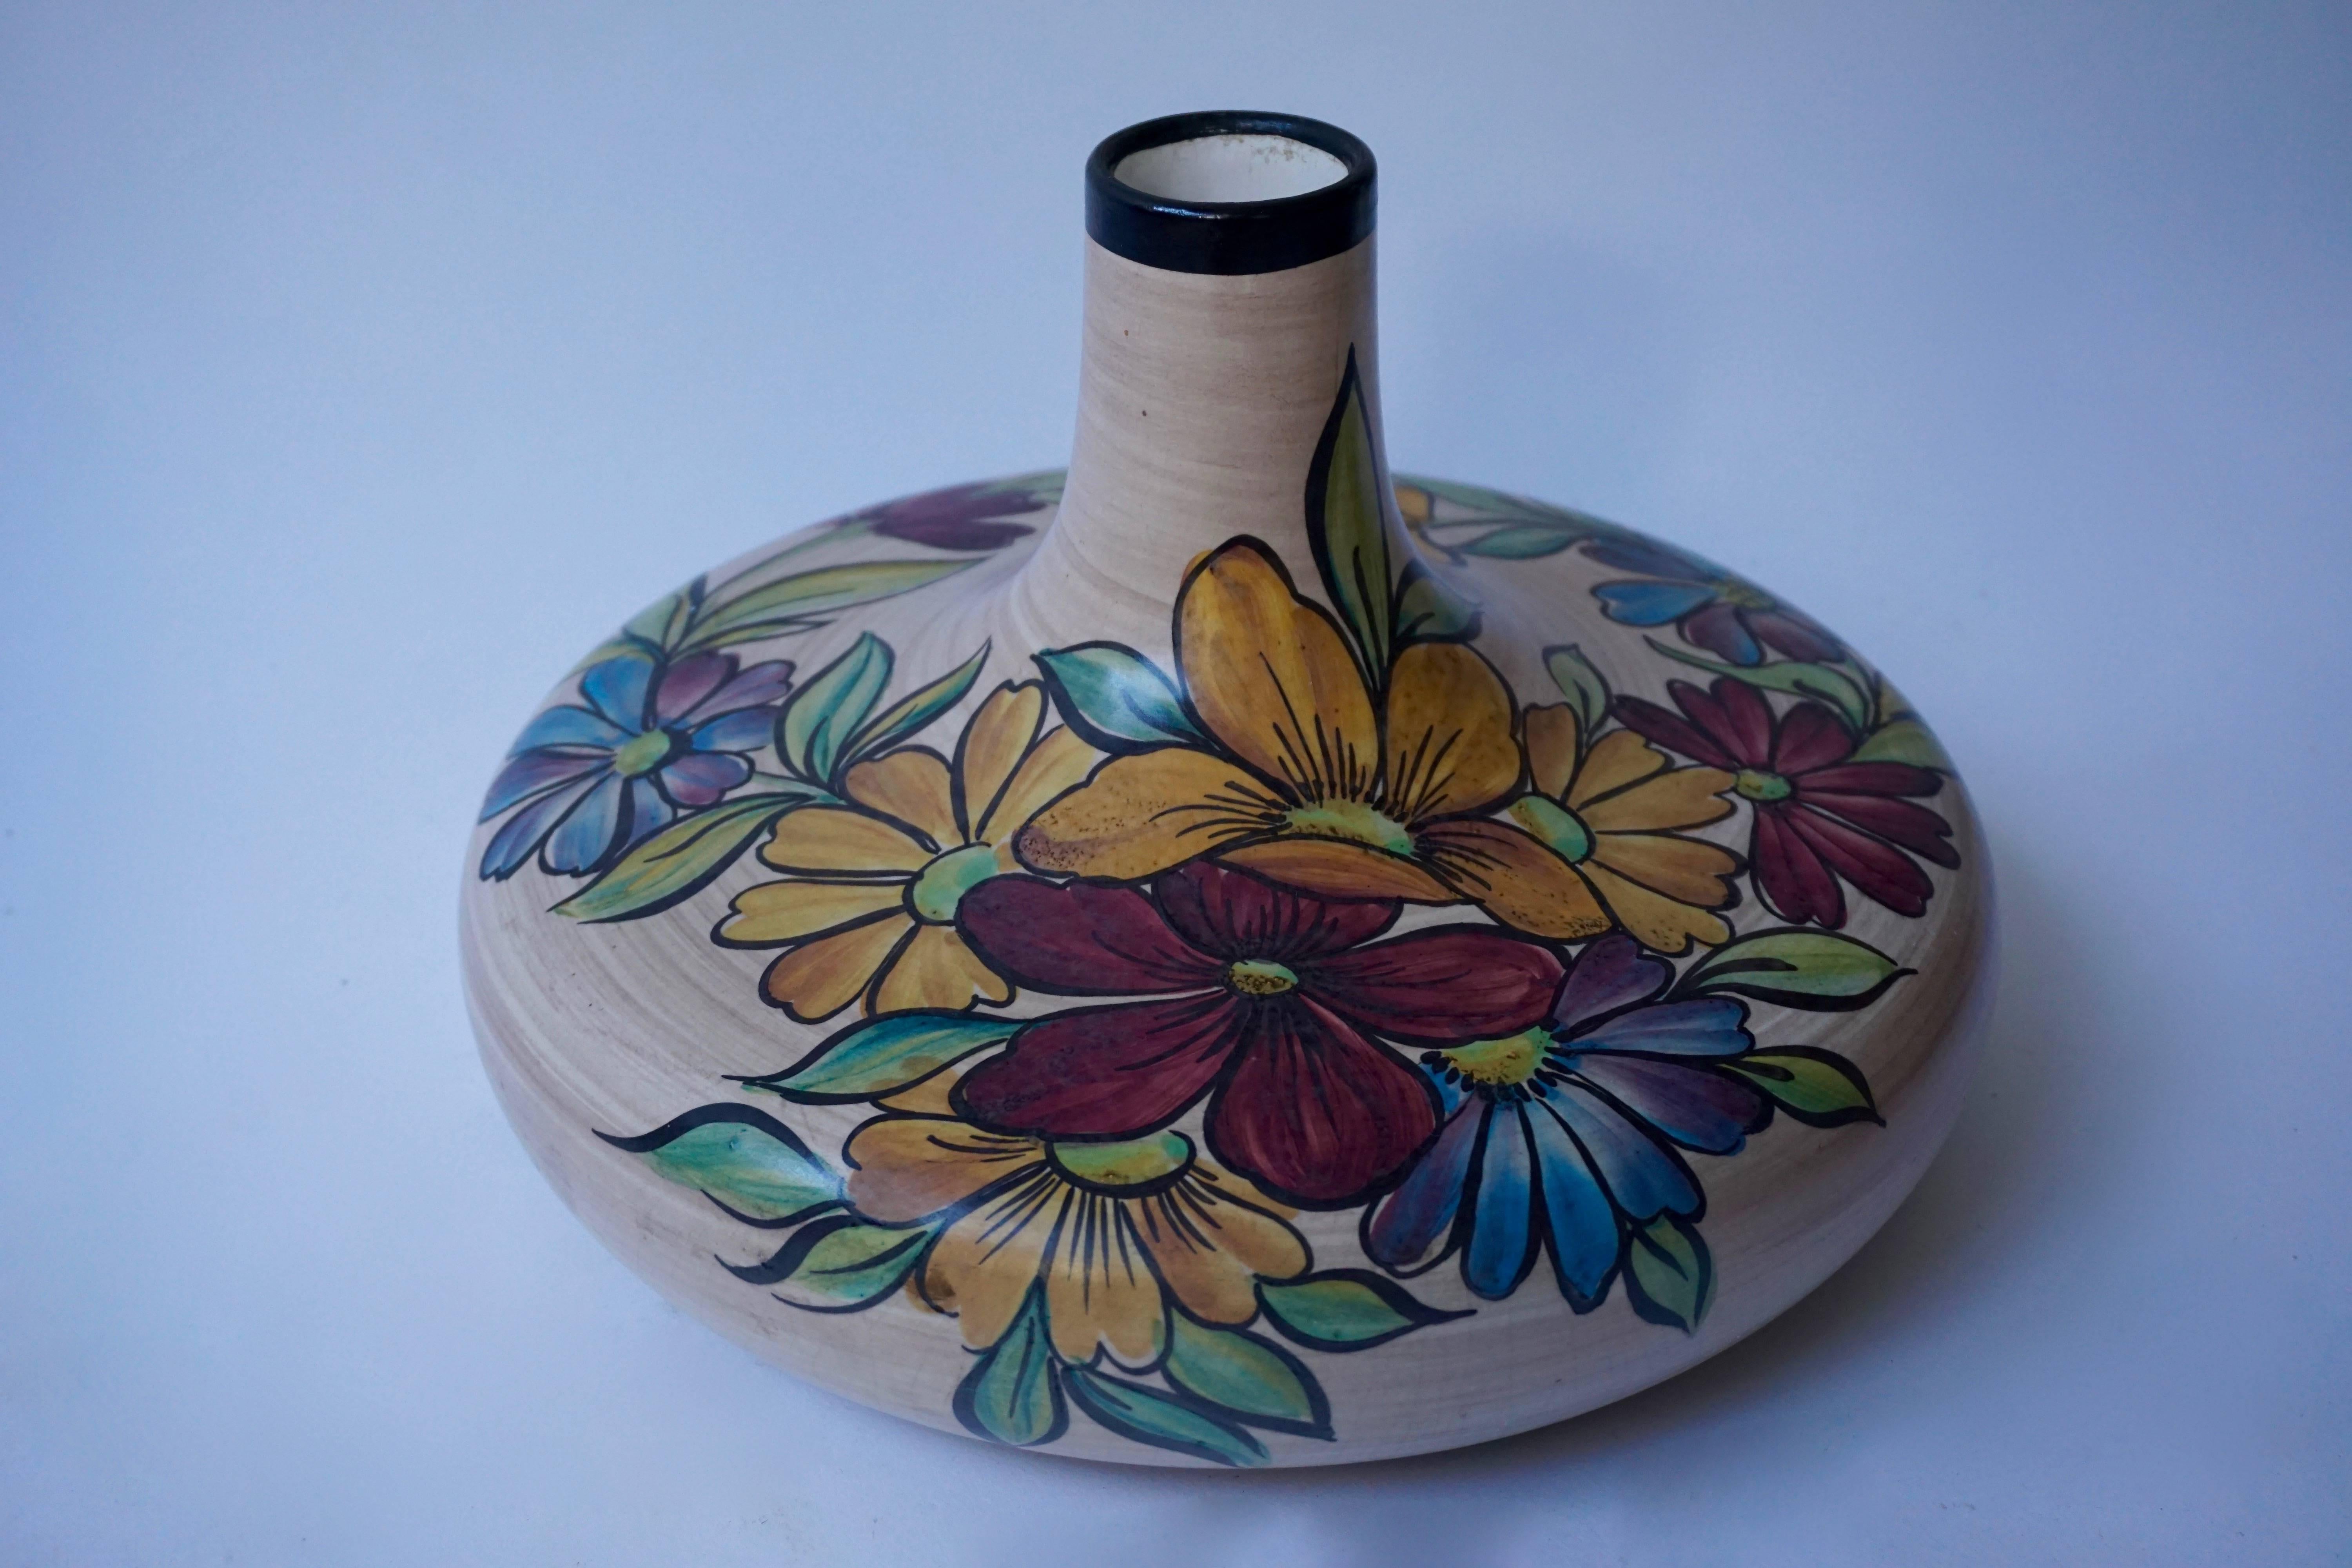 Vase en céramique avec des fleurs.
Mesures : Diamètre 30 cm,
hauteur 19 cm.